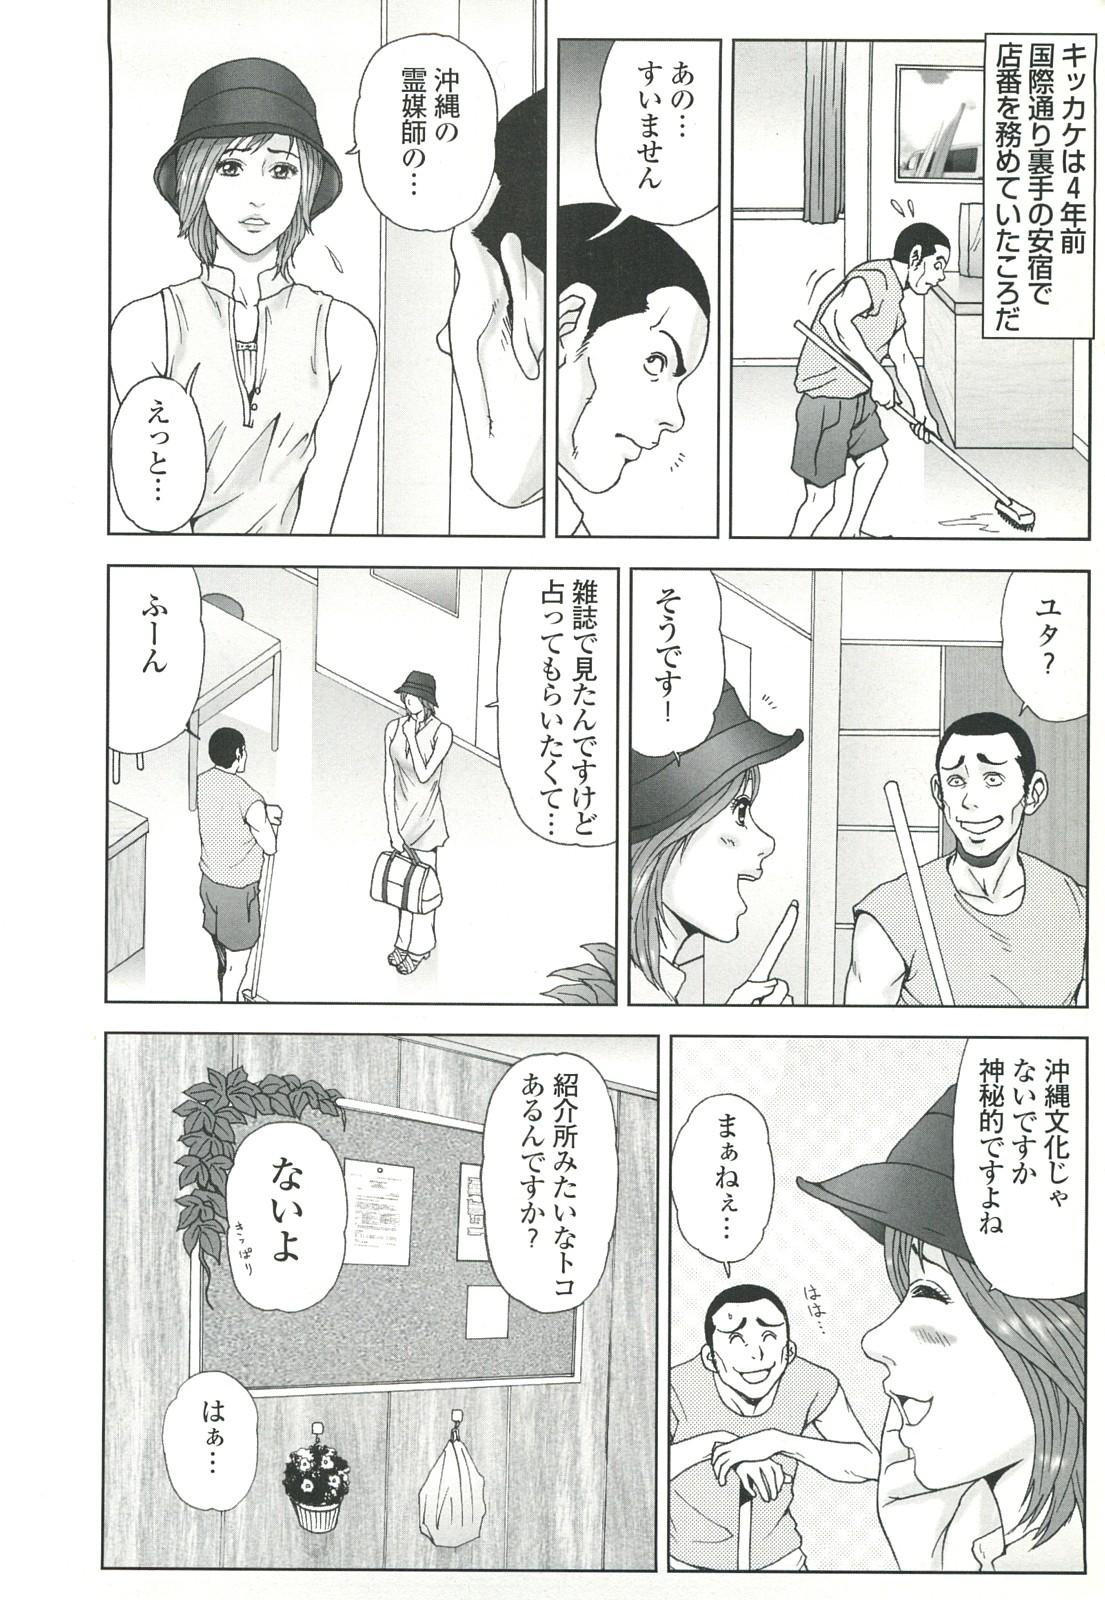 コミック裏モノJAPAN Vol.18 今井のりたつスペシャル号 45